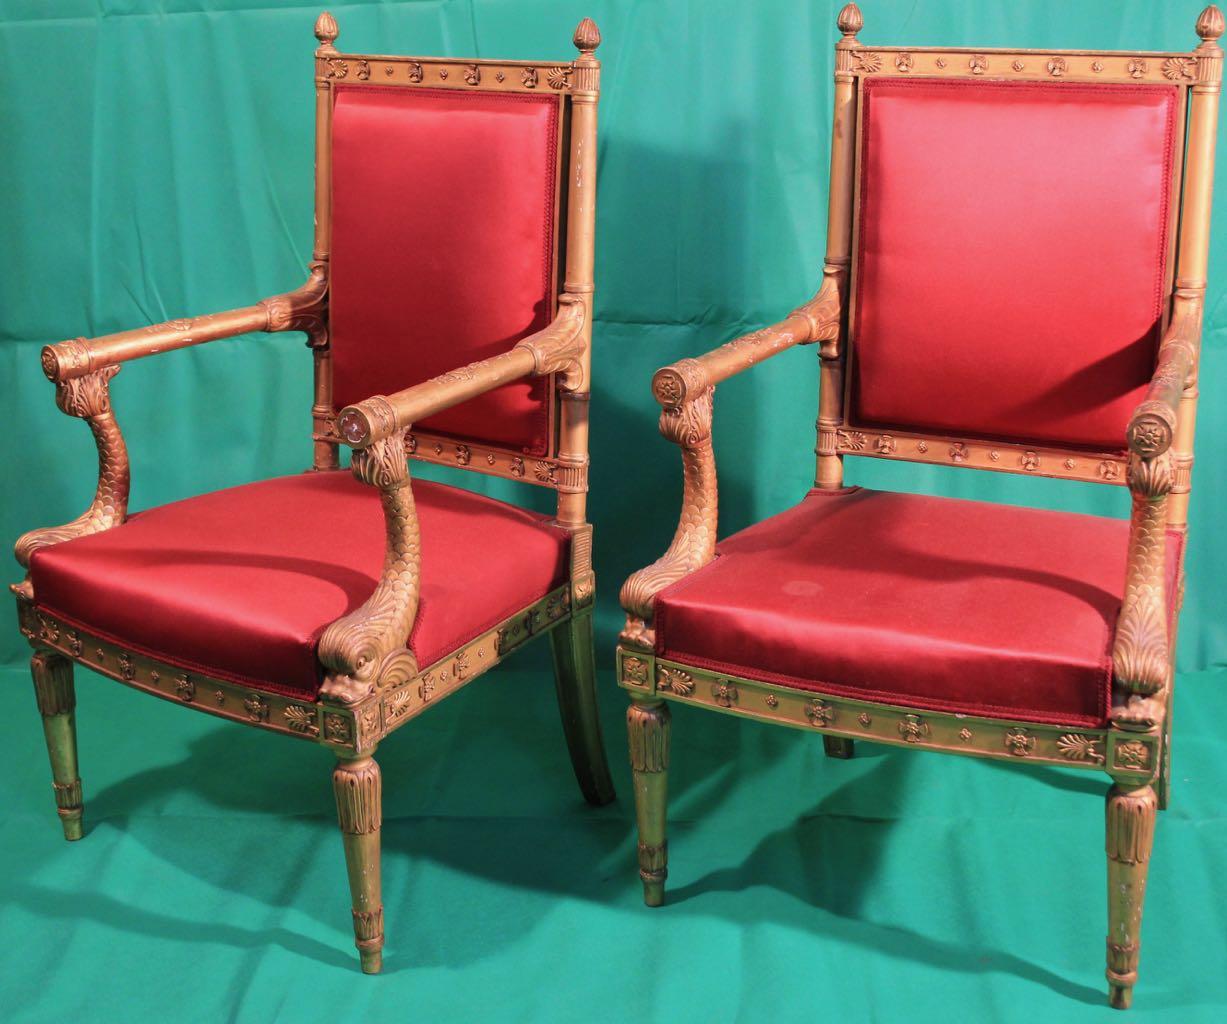 Hervorragendes Paar vergoldeter Sessel, Frankreich, Periode Napoleon III, signiert Quignon.

Frederic Gustave Quignon, Sohn von Napoleon Quignon, wurde am 7. November 1843 in Paris geboren. Er arbeitete mit seinem Vater zusammen, wurde 1872